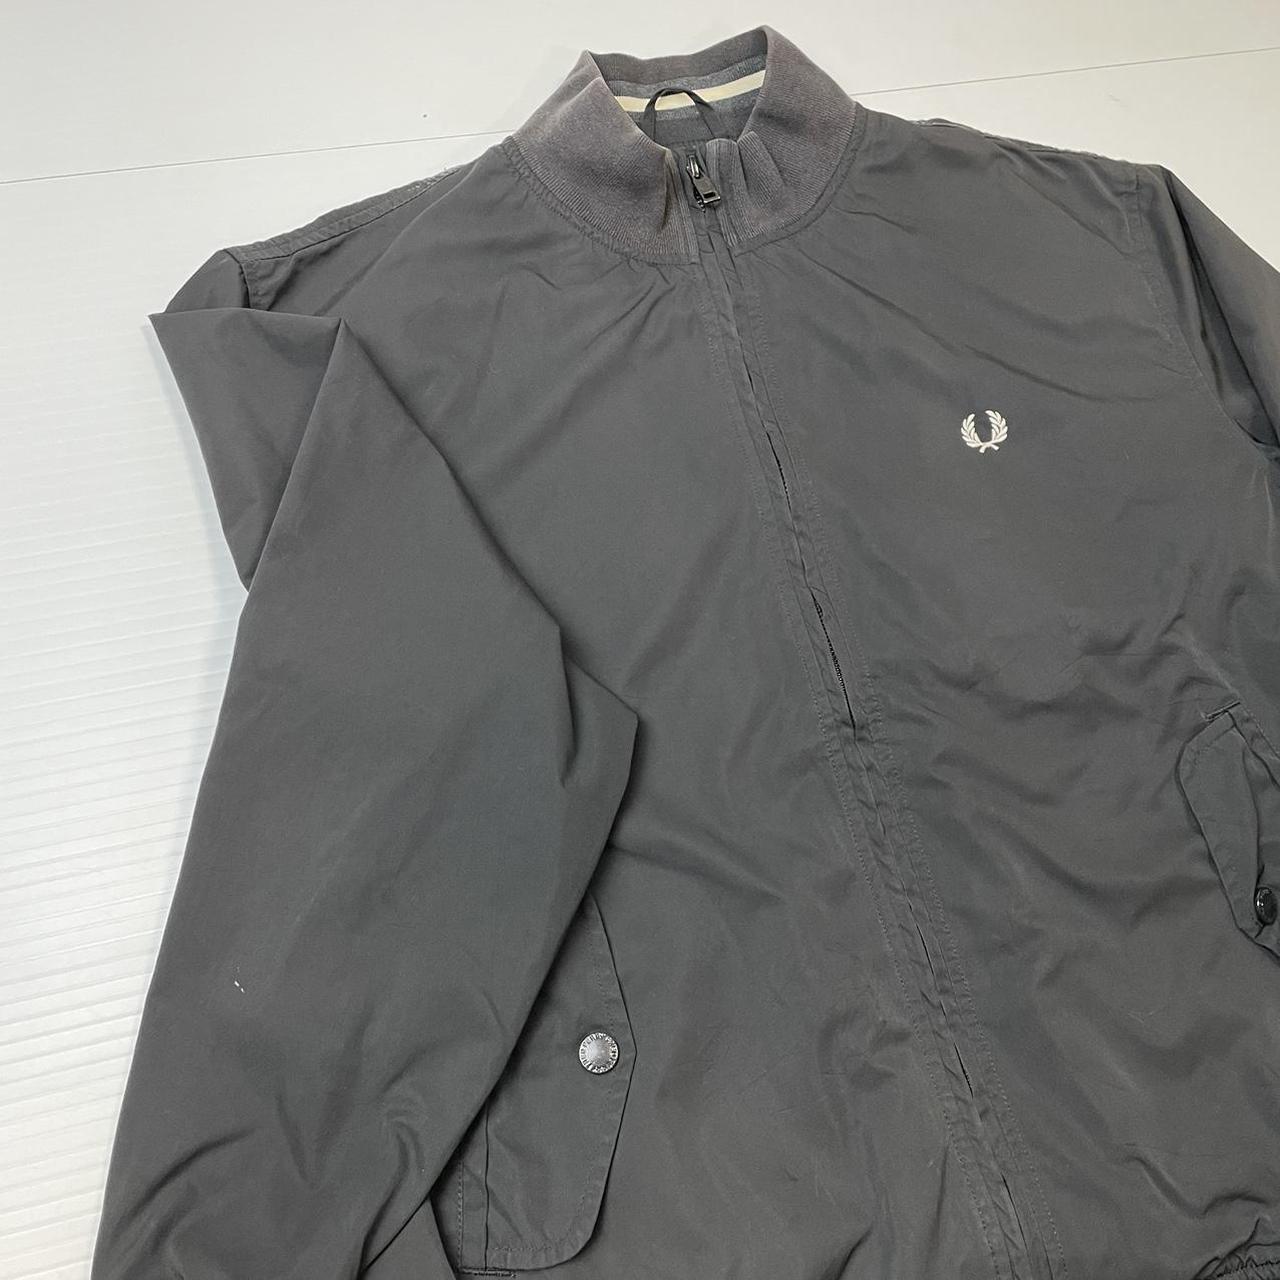 Vintage Fred Perry windbreaker jacket in black... - Depop